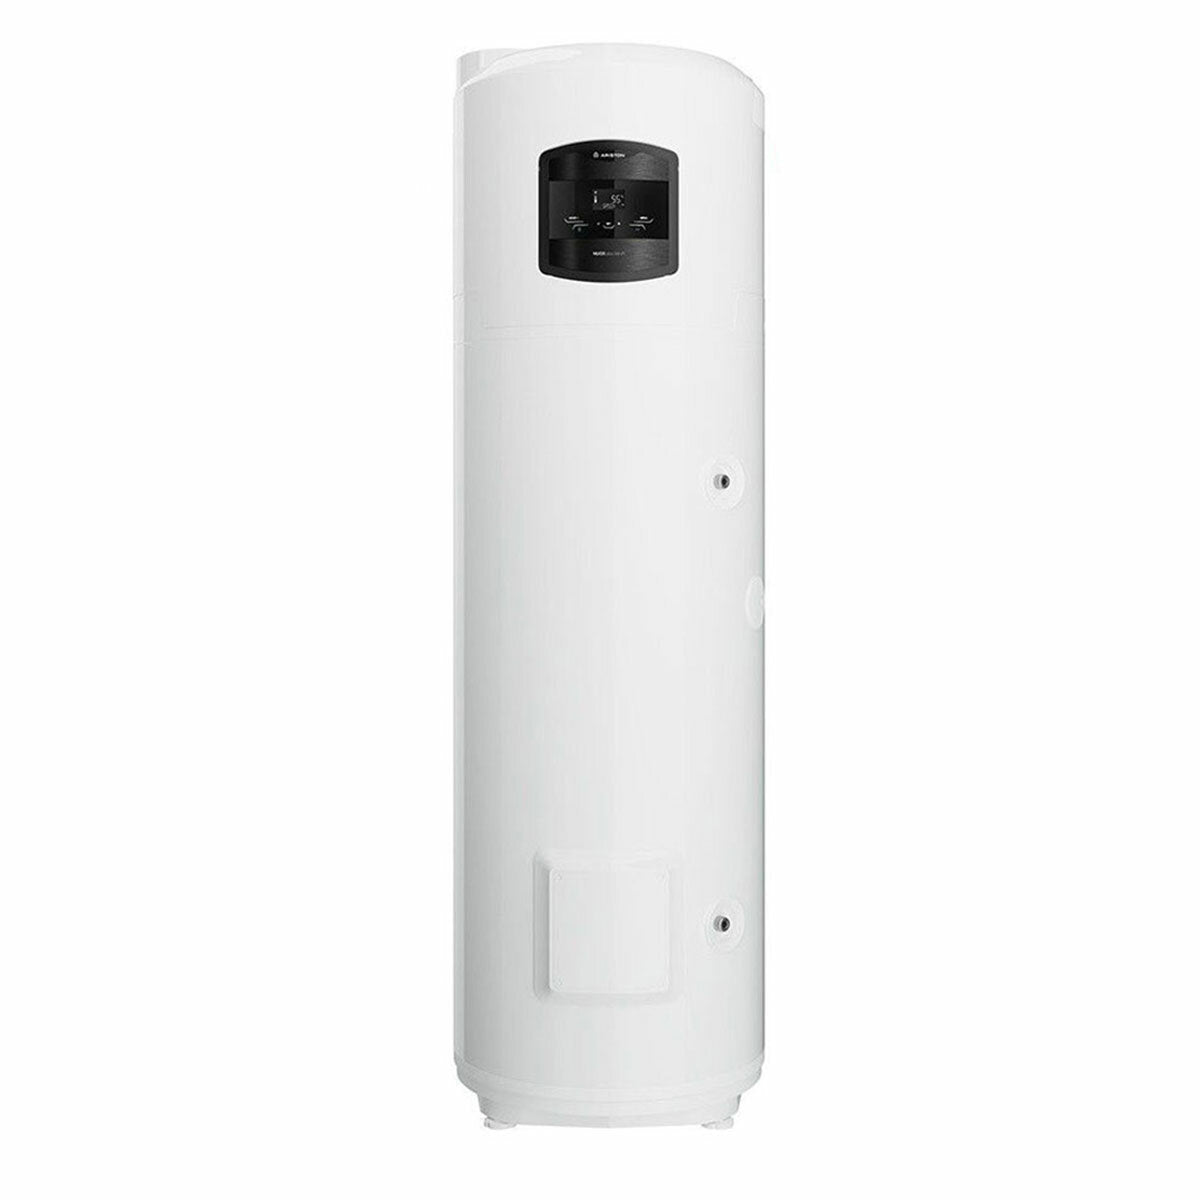 Chauffe-eau pompe à chaleur Ariston Nuos PLUS Wi-Fi 250 litres A+